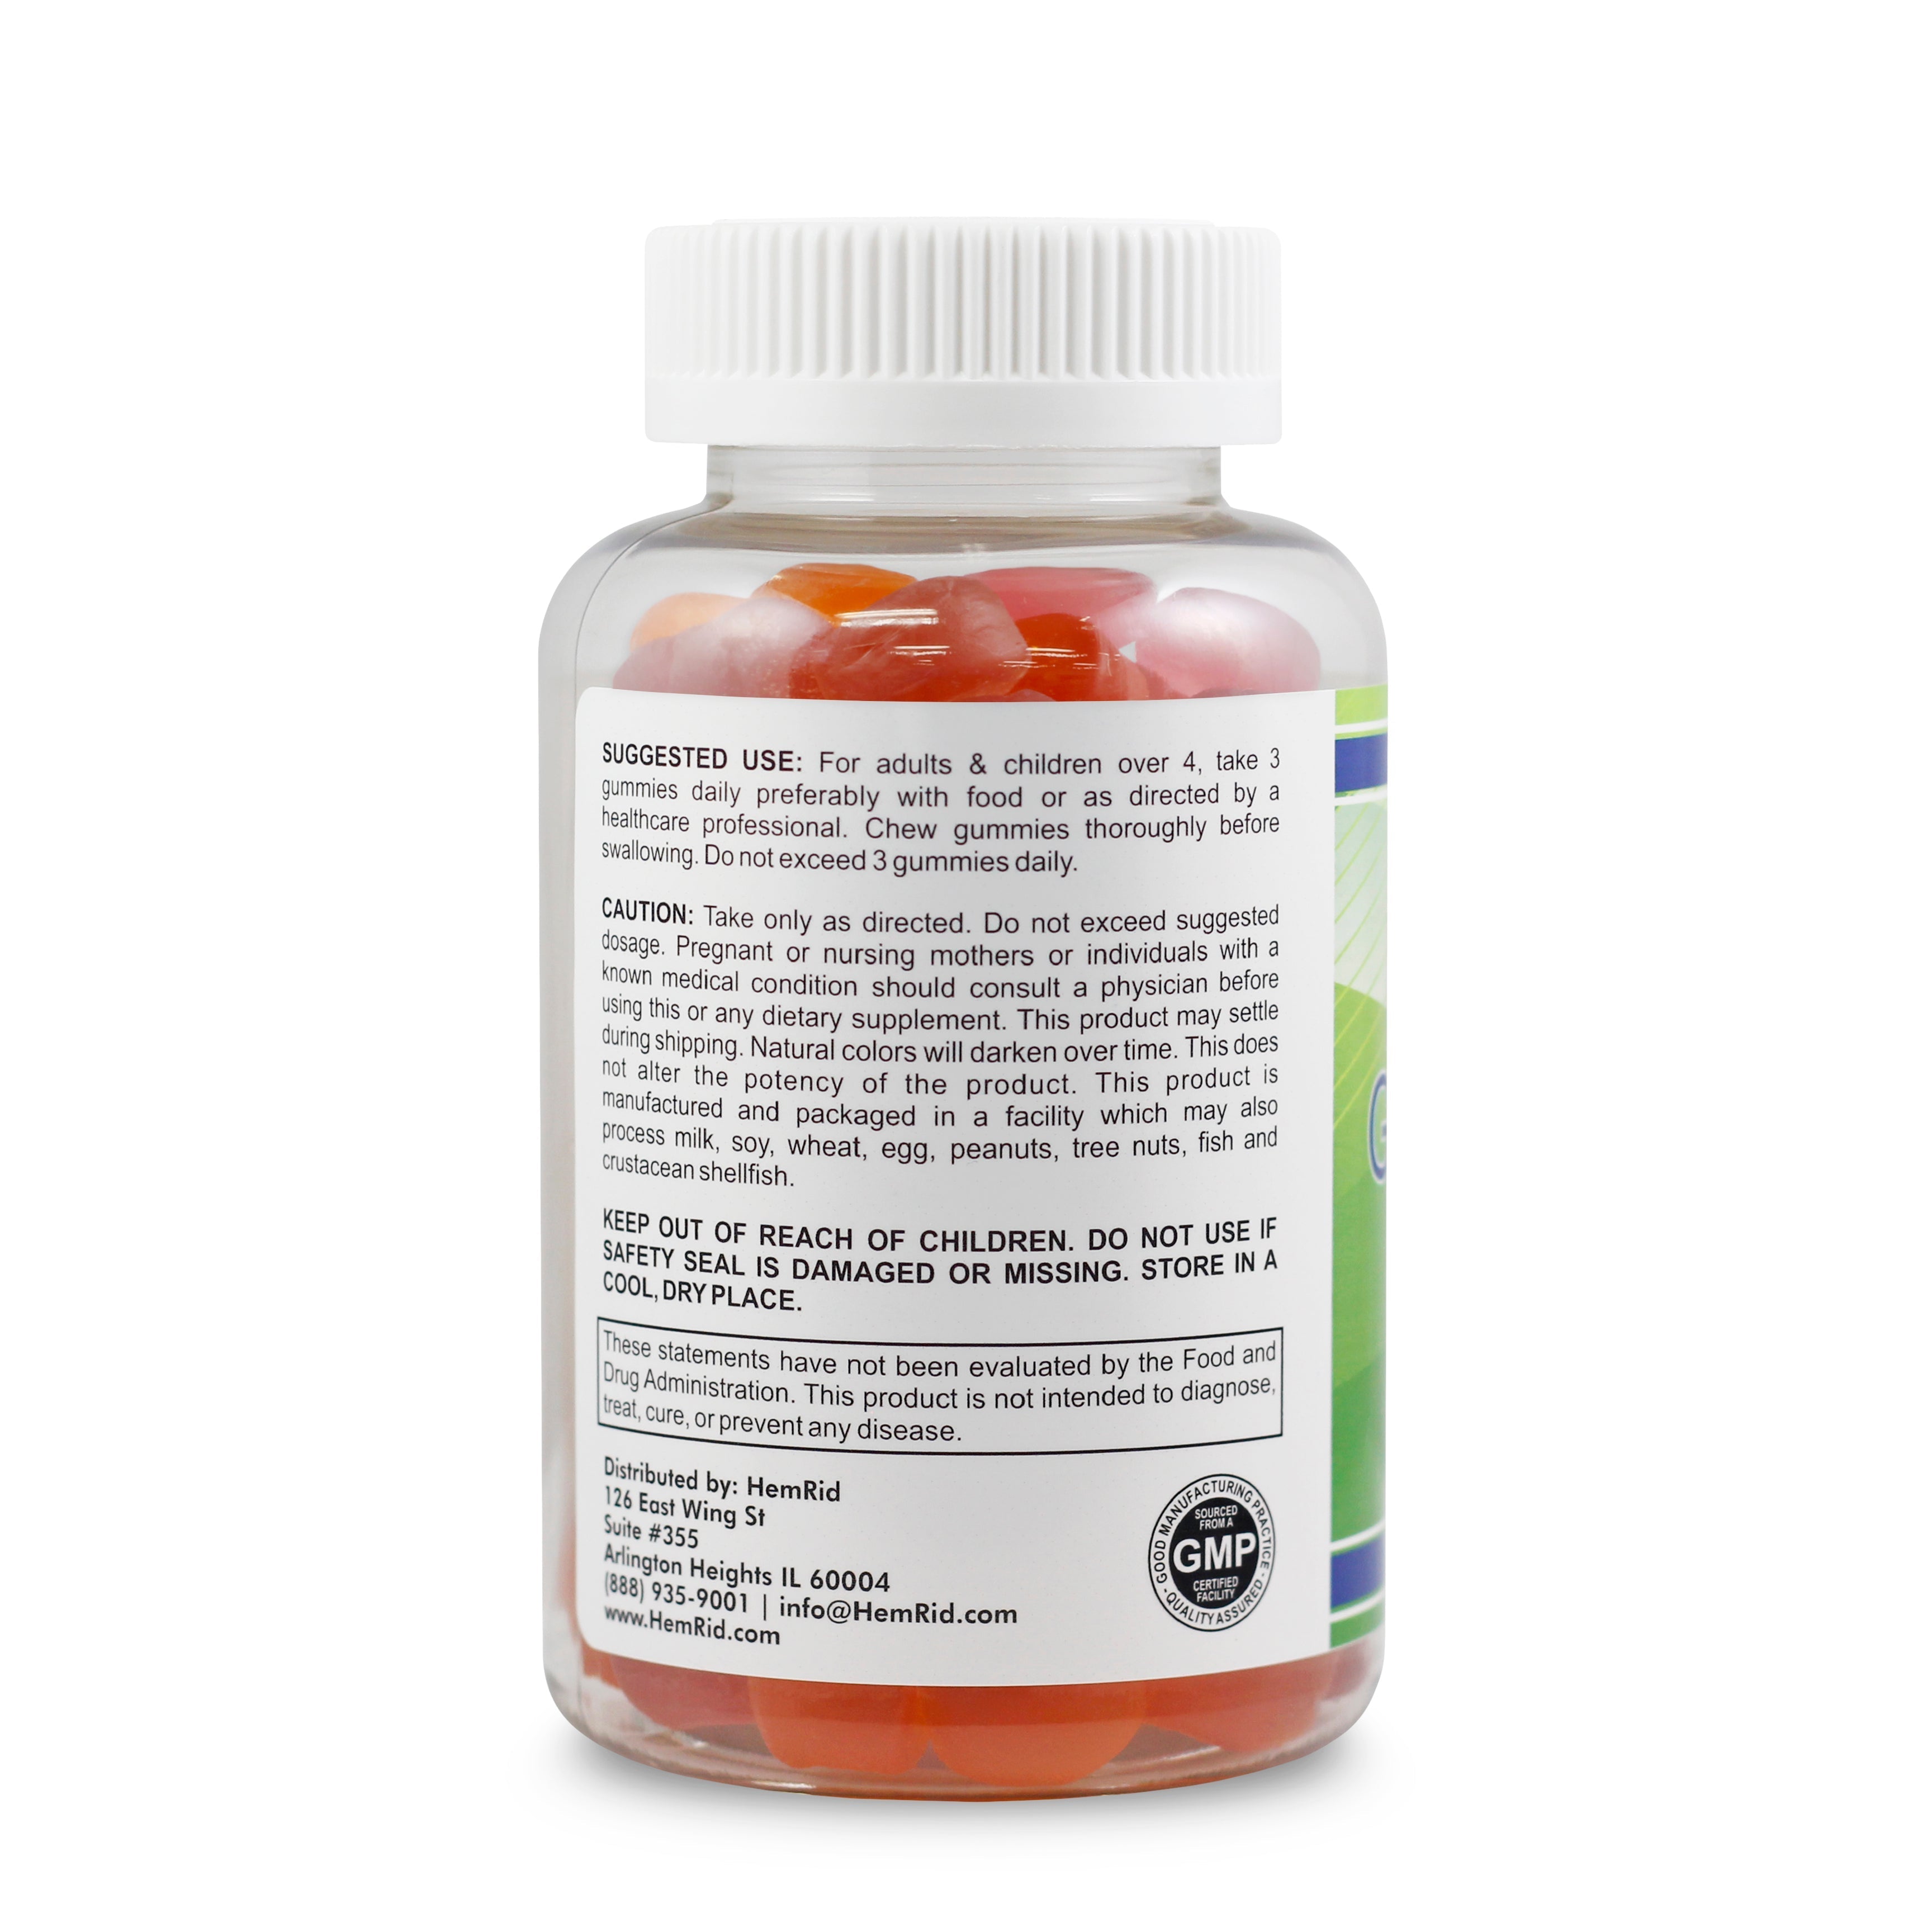 HemRid Fiber Gummies for Hemorrhoids - 5 Bottle Package